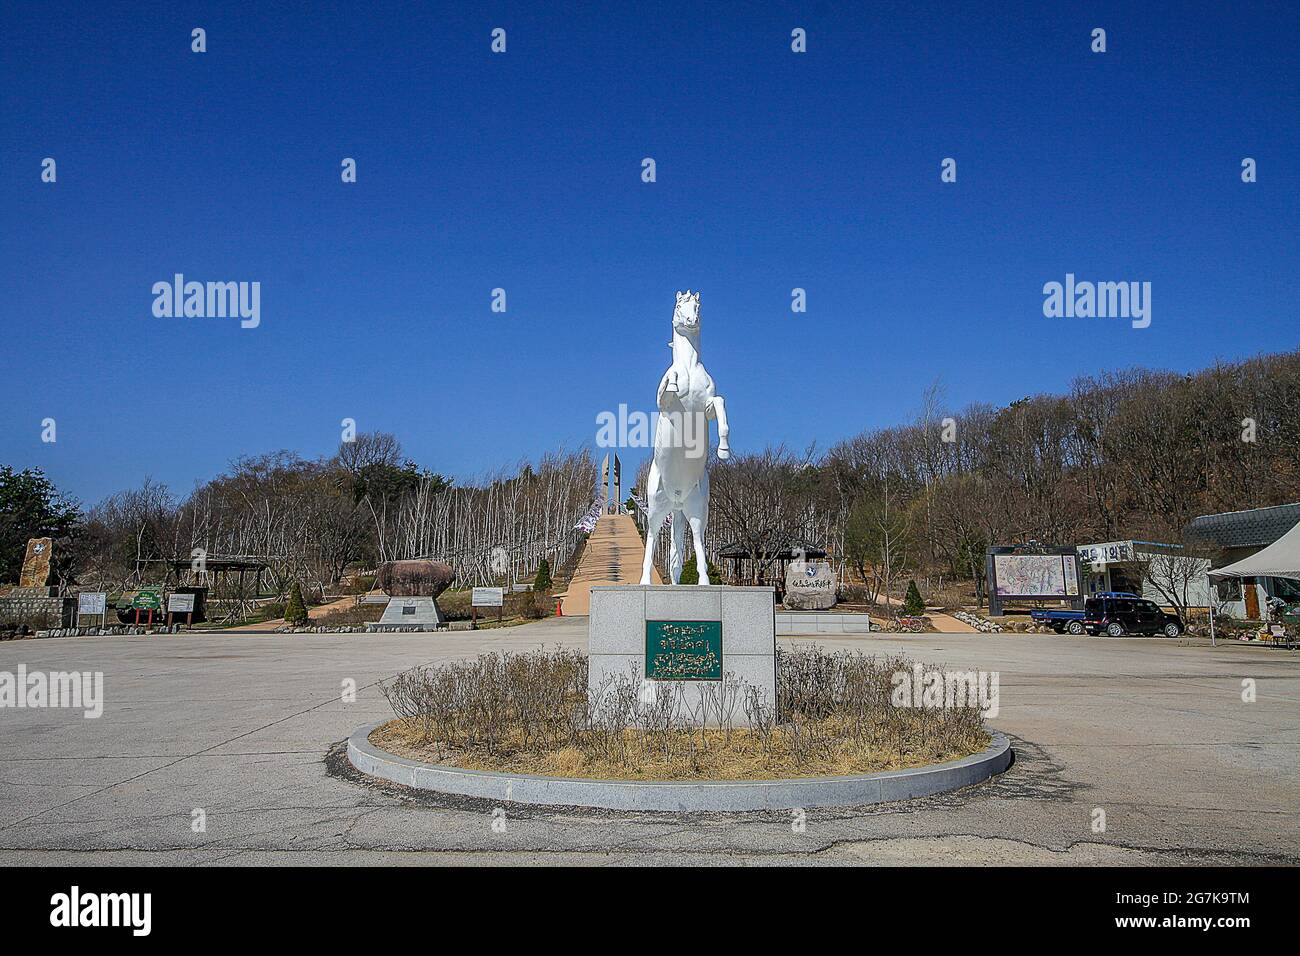 11 de abril de 2018-Goyang, Corea del Sur-Una vista de la batalla de Corea del monumento conmemorativo del caballo blanco en Cheorwon, Corea del Sur. La batalla del caballo blanco fue otra en una serie de sangrientas batallas por posiciones dominantes en la cima de la colina durante la guerra de Corea. Baengma-goji era una colina de 395 metros (1.296 pies) en el Triángulo del Hierro, formada por Pyonggang en su pico y Gimhwa-eup y Cheorwon en su base, era una ruta estratégica de transporte en la región central de la península de Corea. White Horse fue la cresta de una masa forestal de colinas que se extendió en dirección noroeste-sureste por aproximadamente 3 km (dos millas), pa Foto de stock